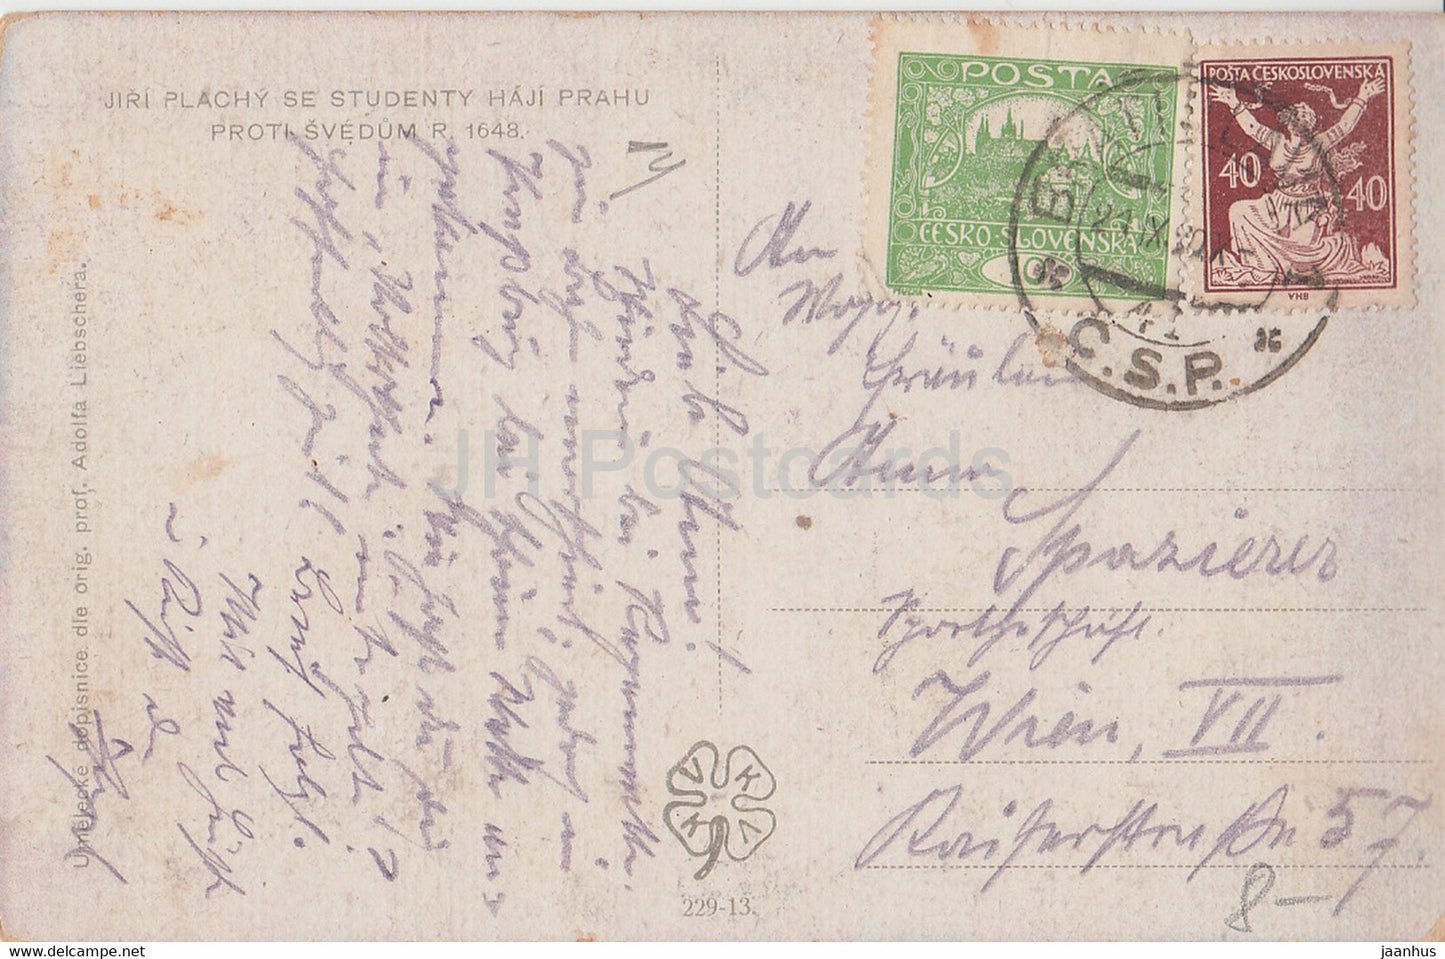 Jiri Plachy se Studenty Haji Prahu Proti Svedum 1648 - alte Postkarte - Tschechoslowakei - Tschechische Republik - gebraucht